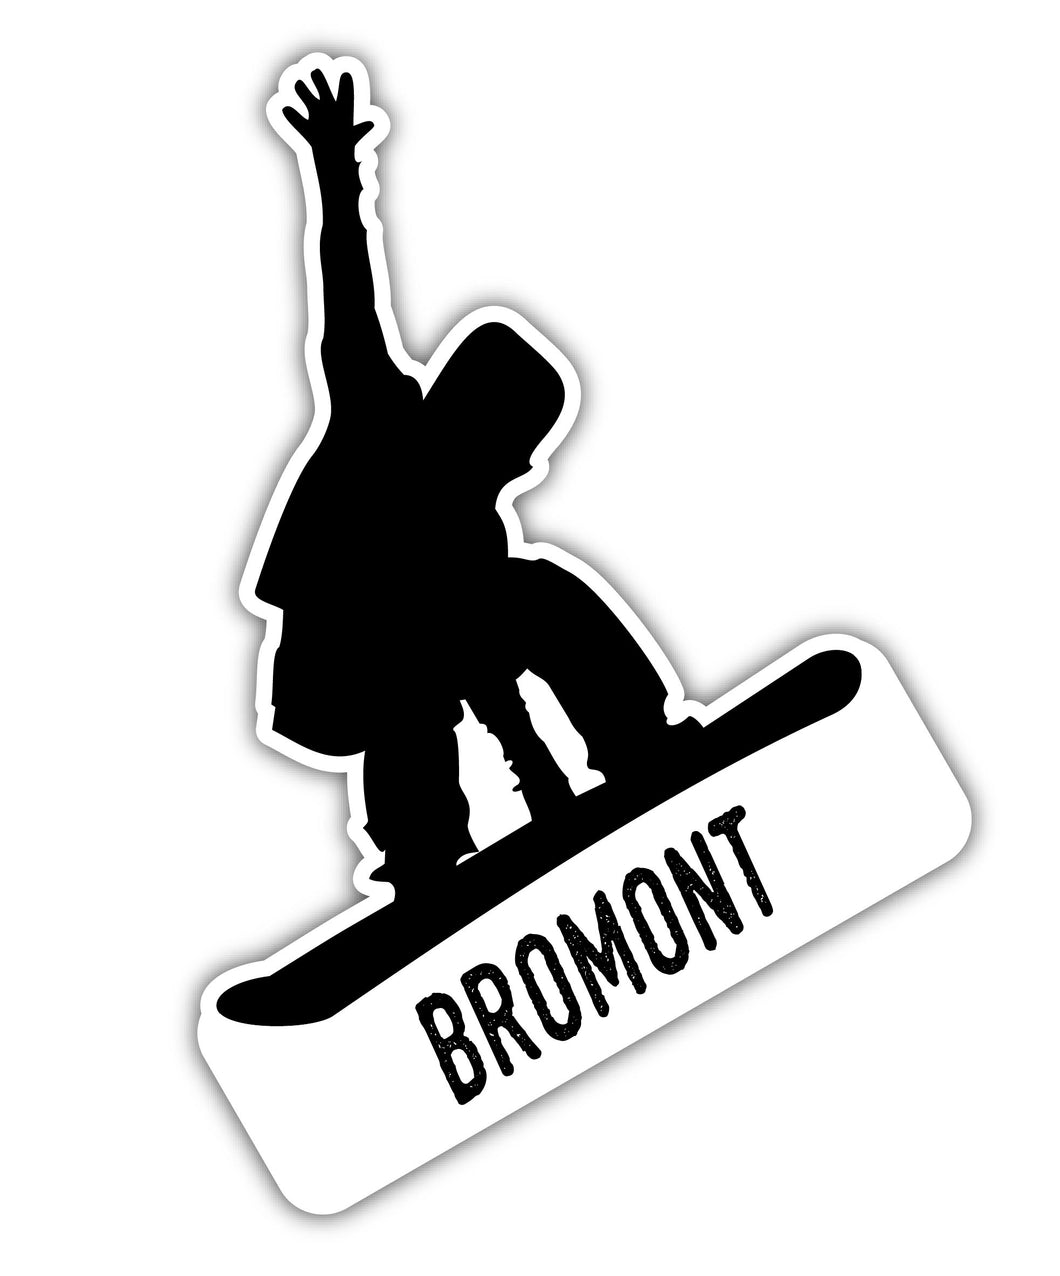 Bromont Quebec Ski Adventures Souvenir 4 Inch Vinyl Decal Sticker Mountain Design